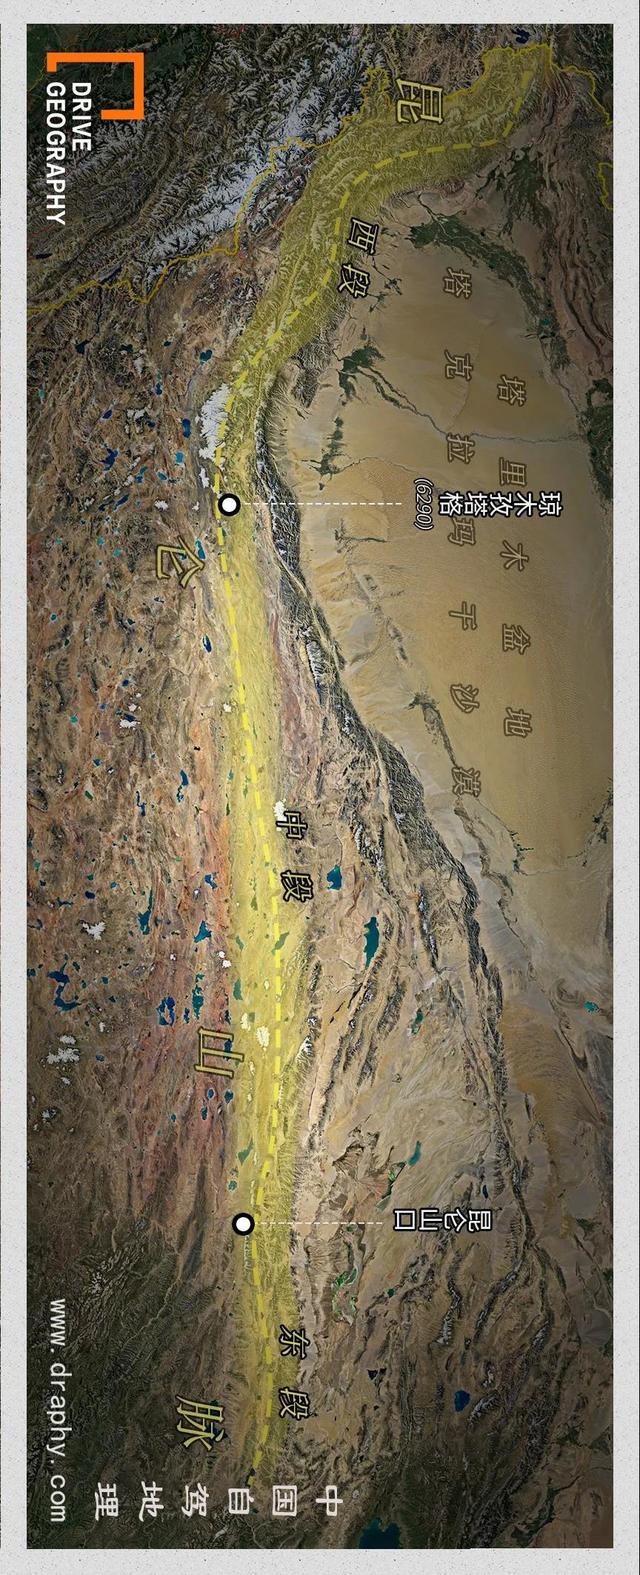 克裏雅古道，一條以艱險著稱的新疆進藏通道，到底是什麽樣的？